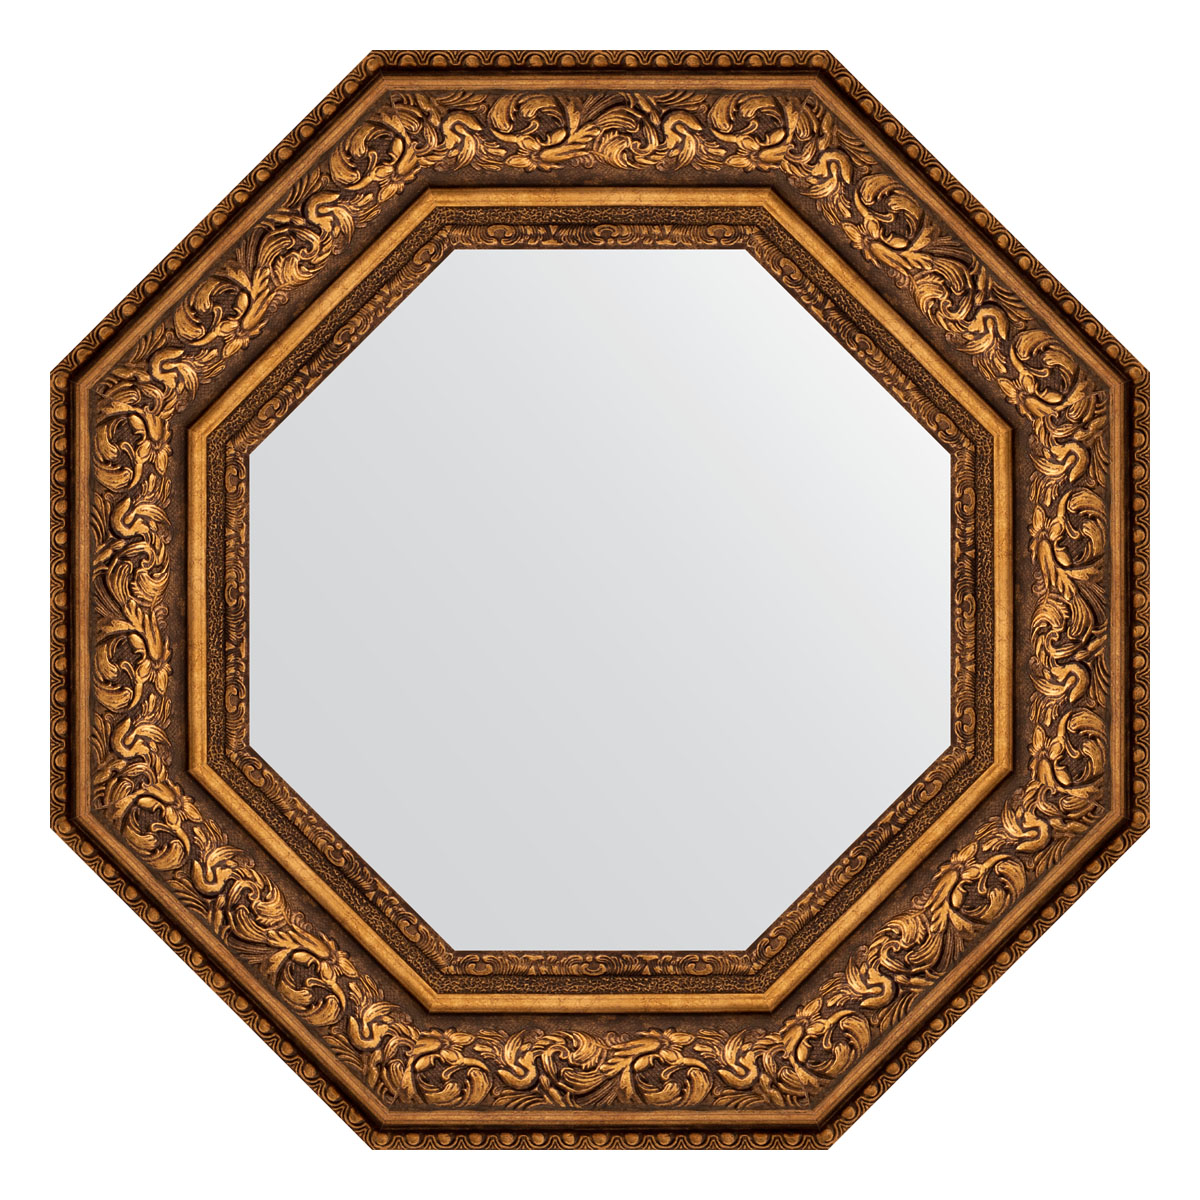 

Зеркало в раме 61x61см Evoform BY 3856 виньетка состаренная бронза, Золотистый, BY 3856